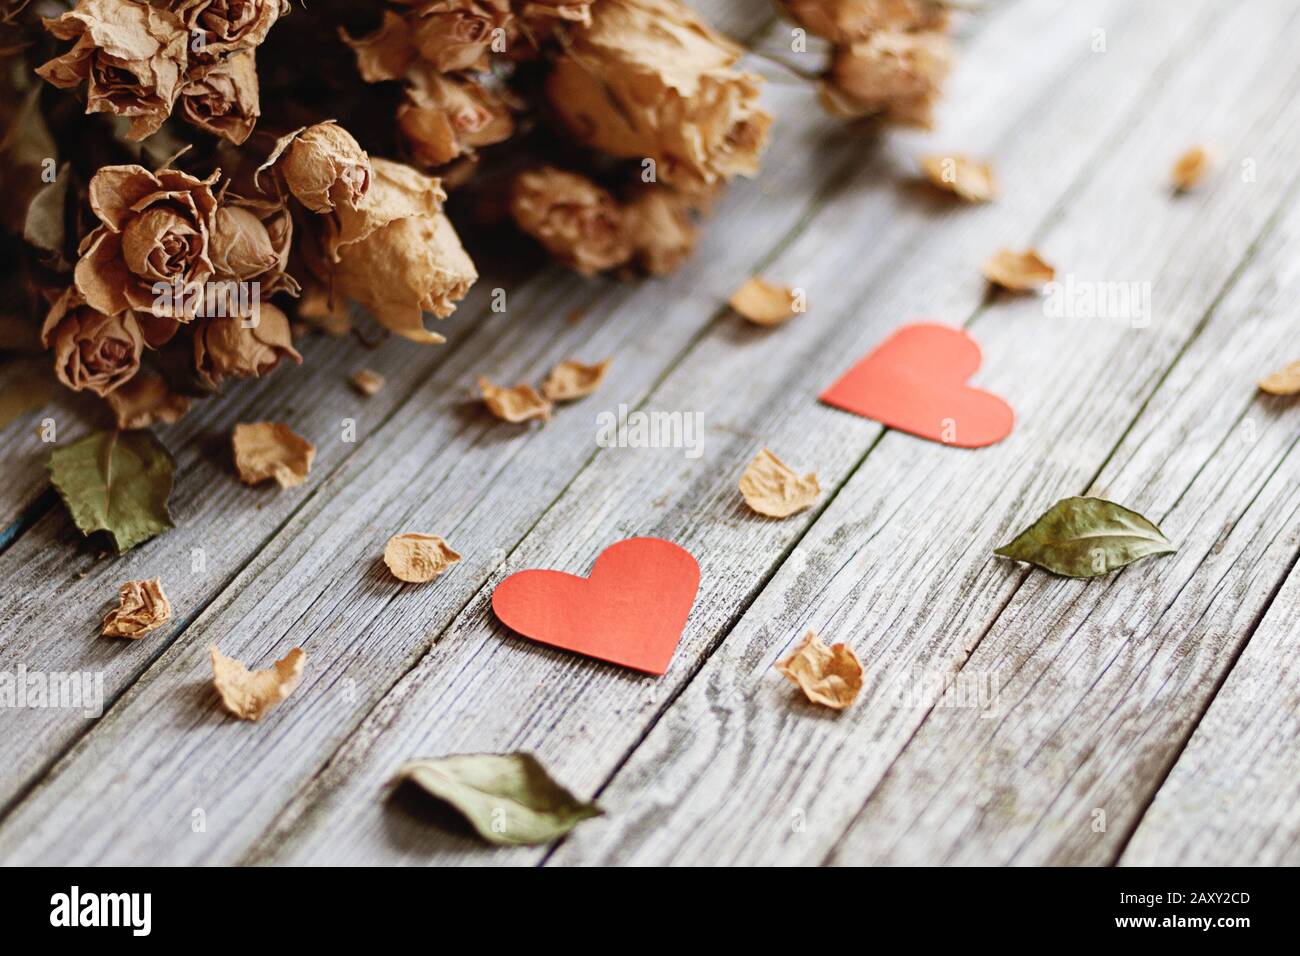 Erinnerungen an romantische Liebe. Zwei rote Herzen und ein getrockneter Rosenstrauß auf grauem Holz Stockfoto